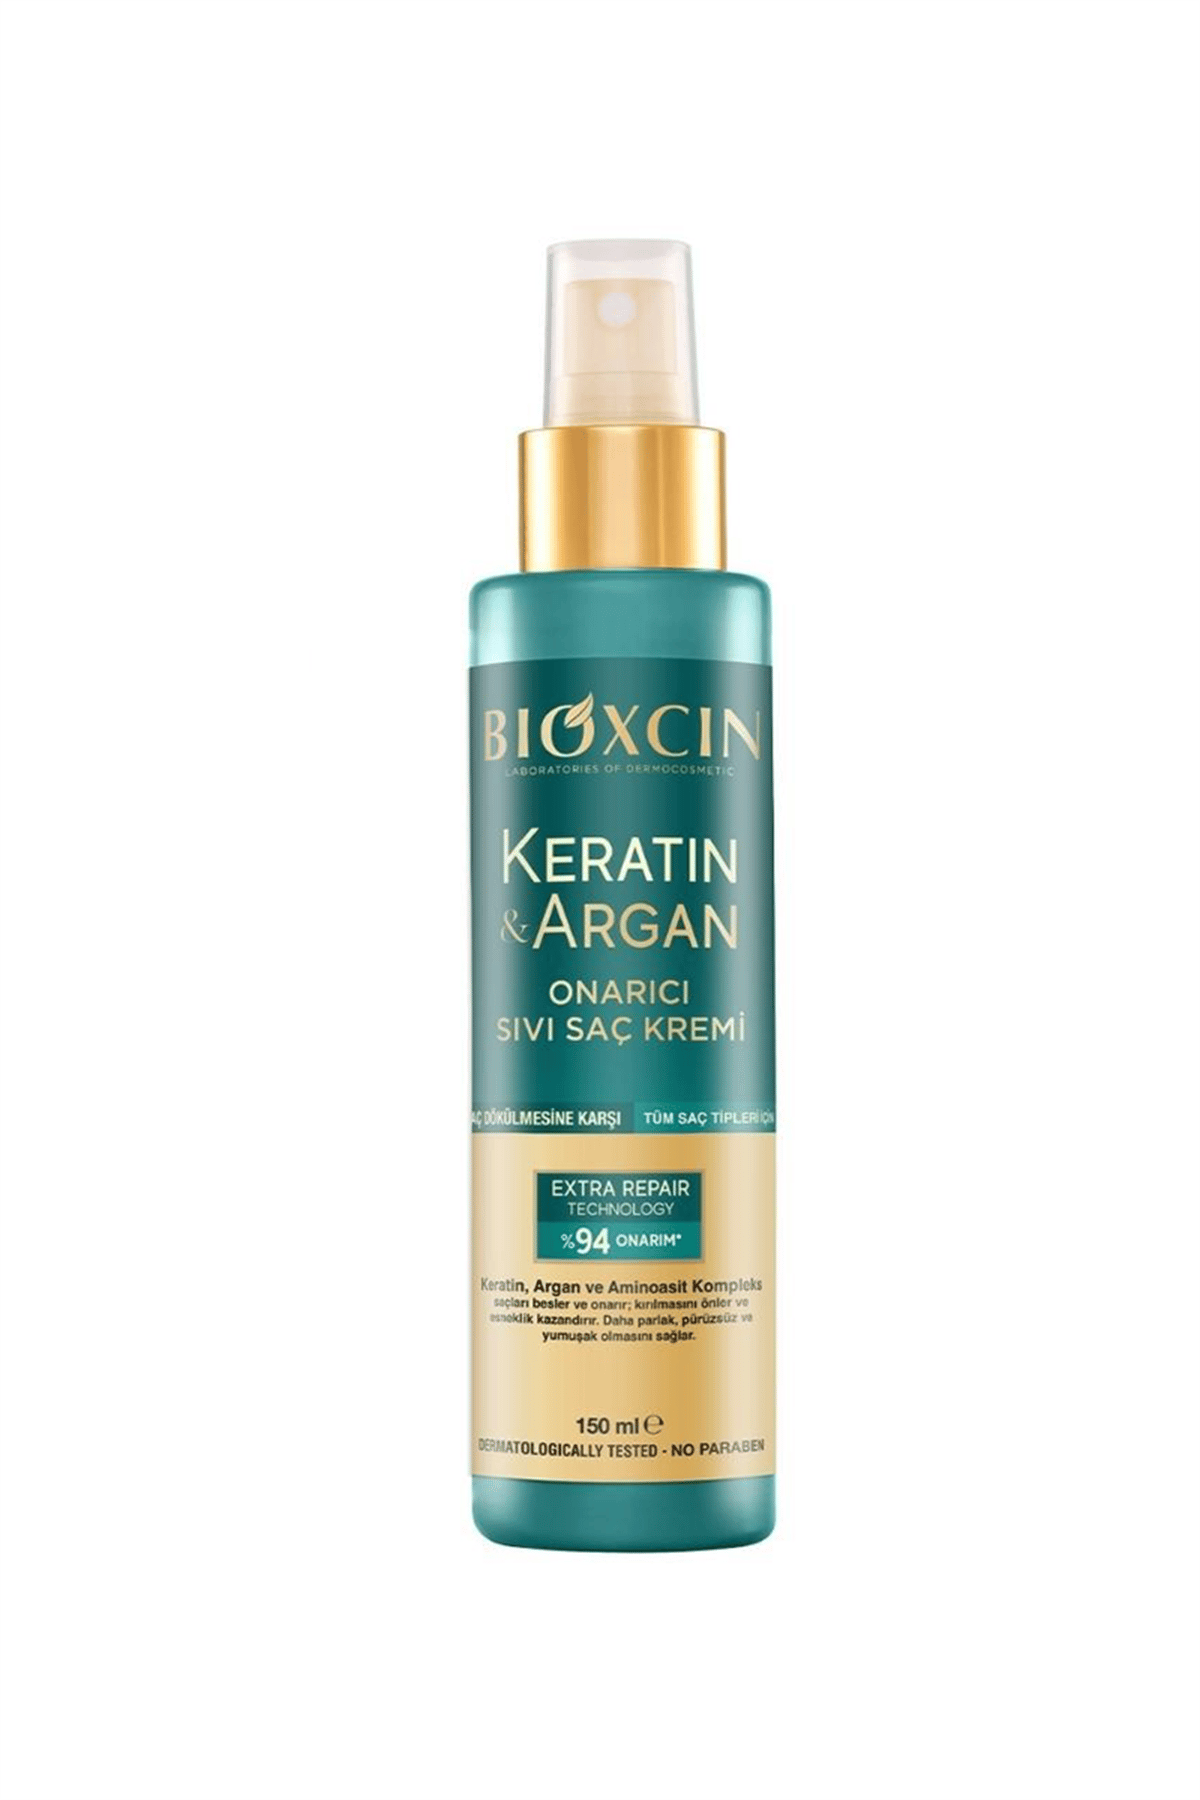 Bioxcin Keratin & Argan Onarıcı Sıvı Saç Bakım Kremi 150 ml | Kozmovital